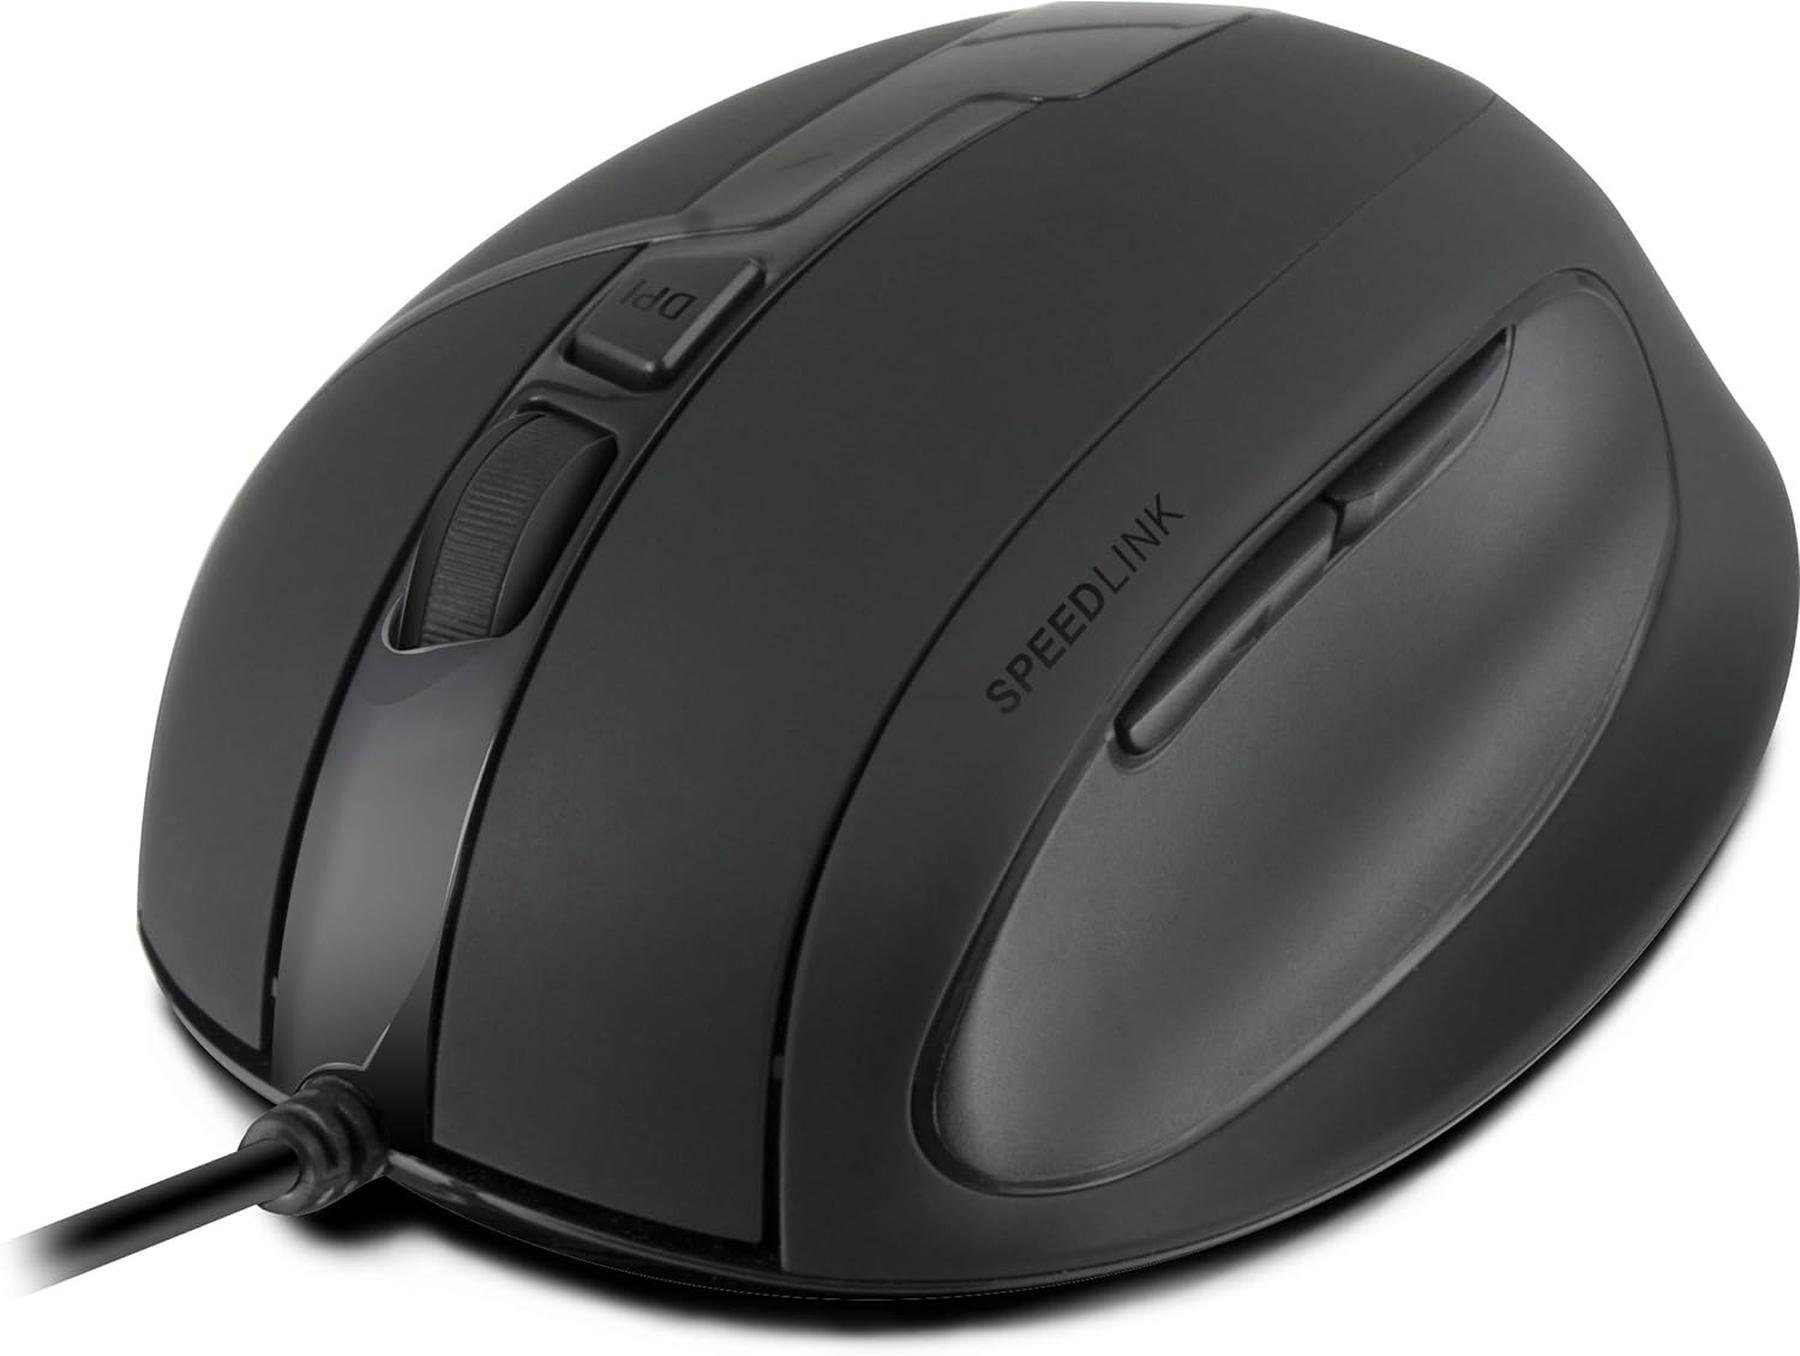 Speedlink peedlink OBSIDIA Ergonomic Mouse mit USB Anschluss schwarz ergonomische Maus (USB, Einstellbare DPI, Ergonomisch, Nur für Rechtshänder, Scrollrad)